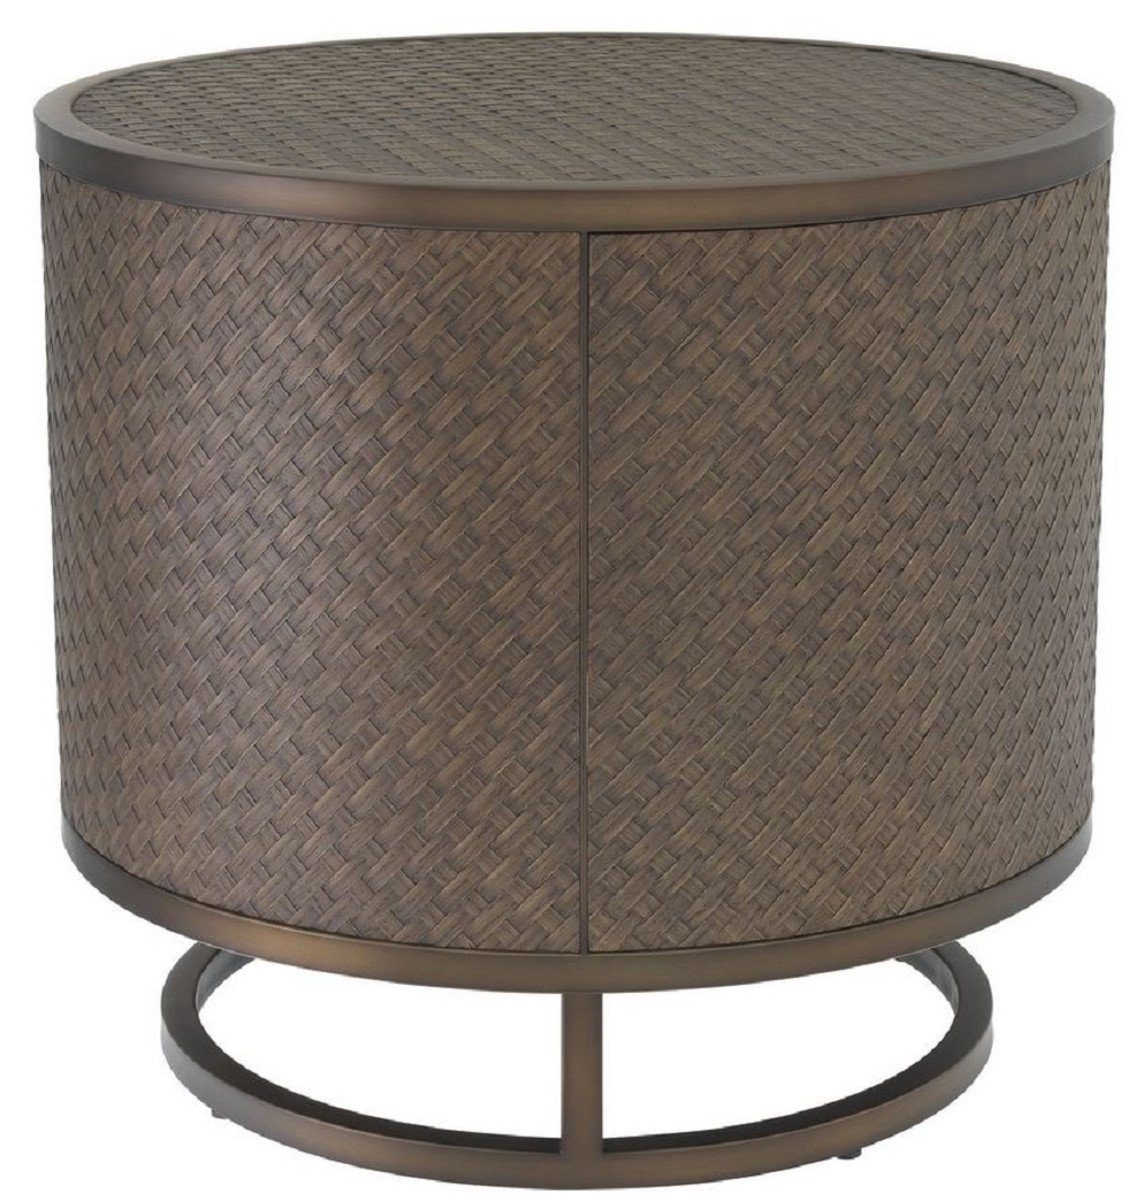 Casa Padrino Beistelltisch Luxus Beistelltisch Bronze Ø 55 x H. 50,5 cm - Runder Eichenfurnier Tisch mit Edelstahl Gestell - Luxus Wohnzimmermöbel